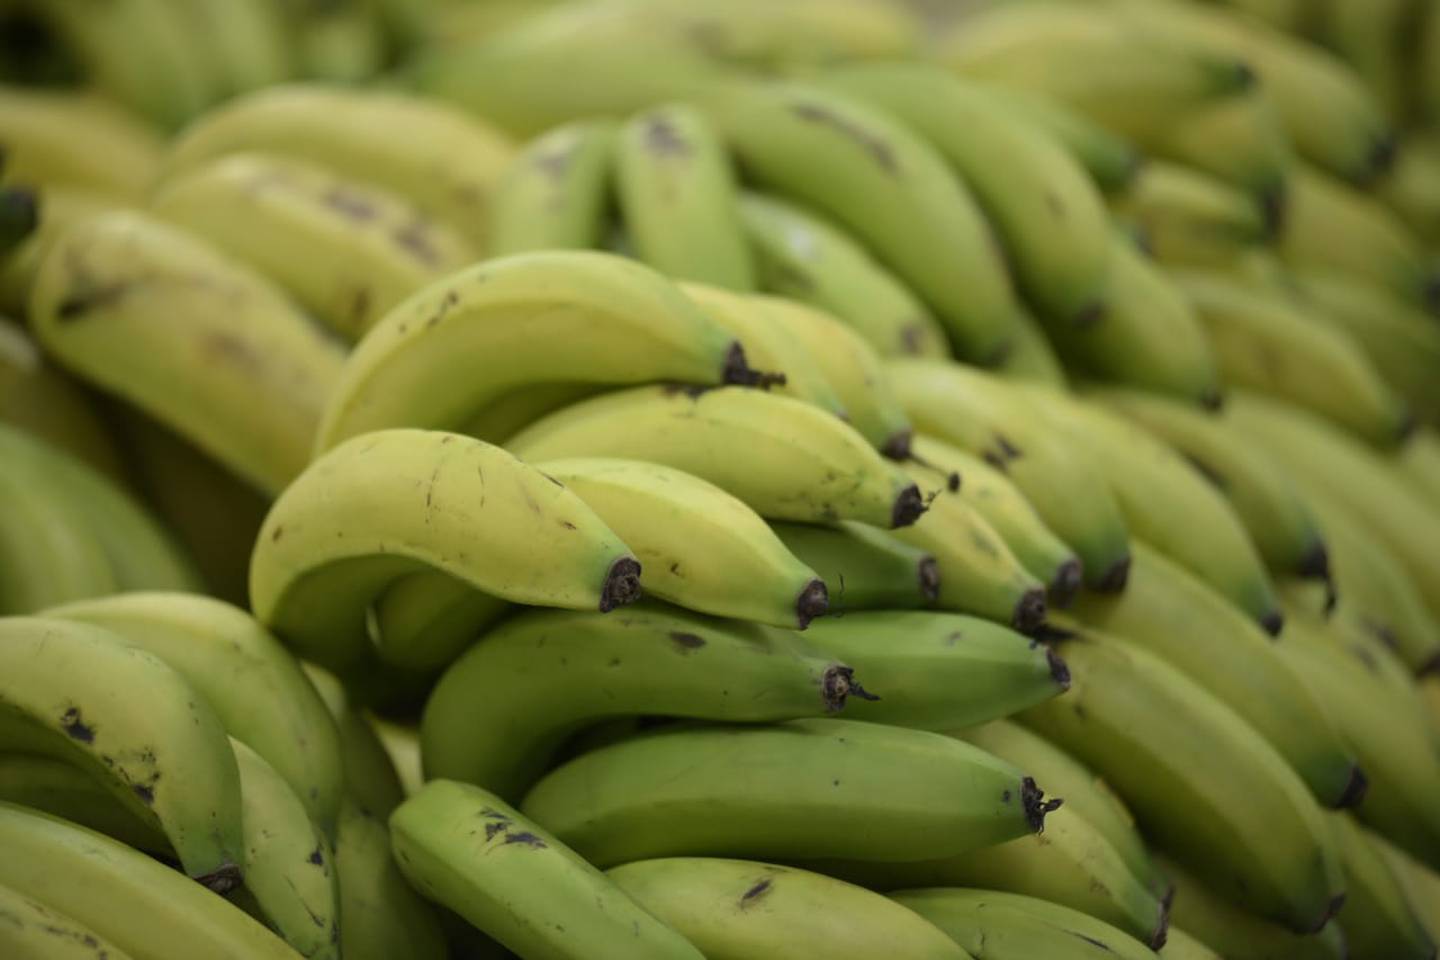 Rusia es el principal mercado para el banano ecuatoriano, pues compra el 20% de la producción.